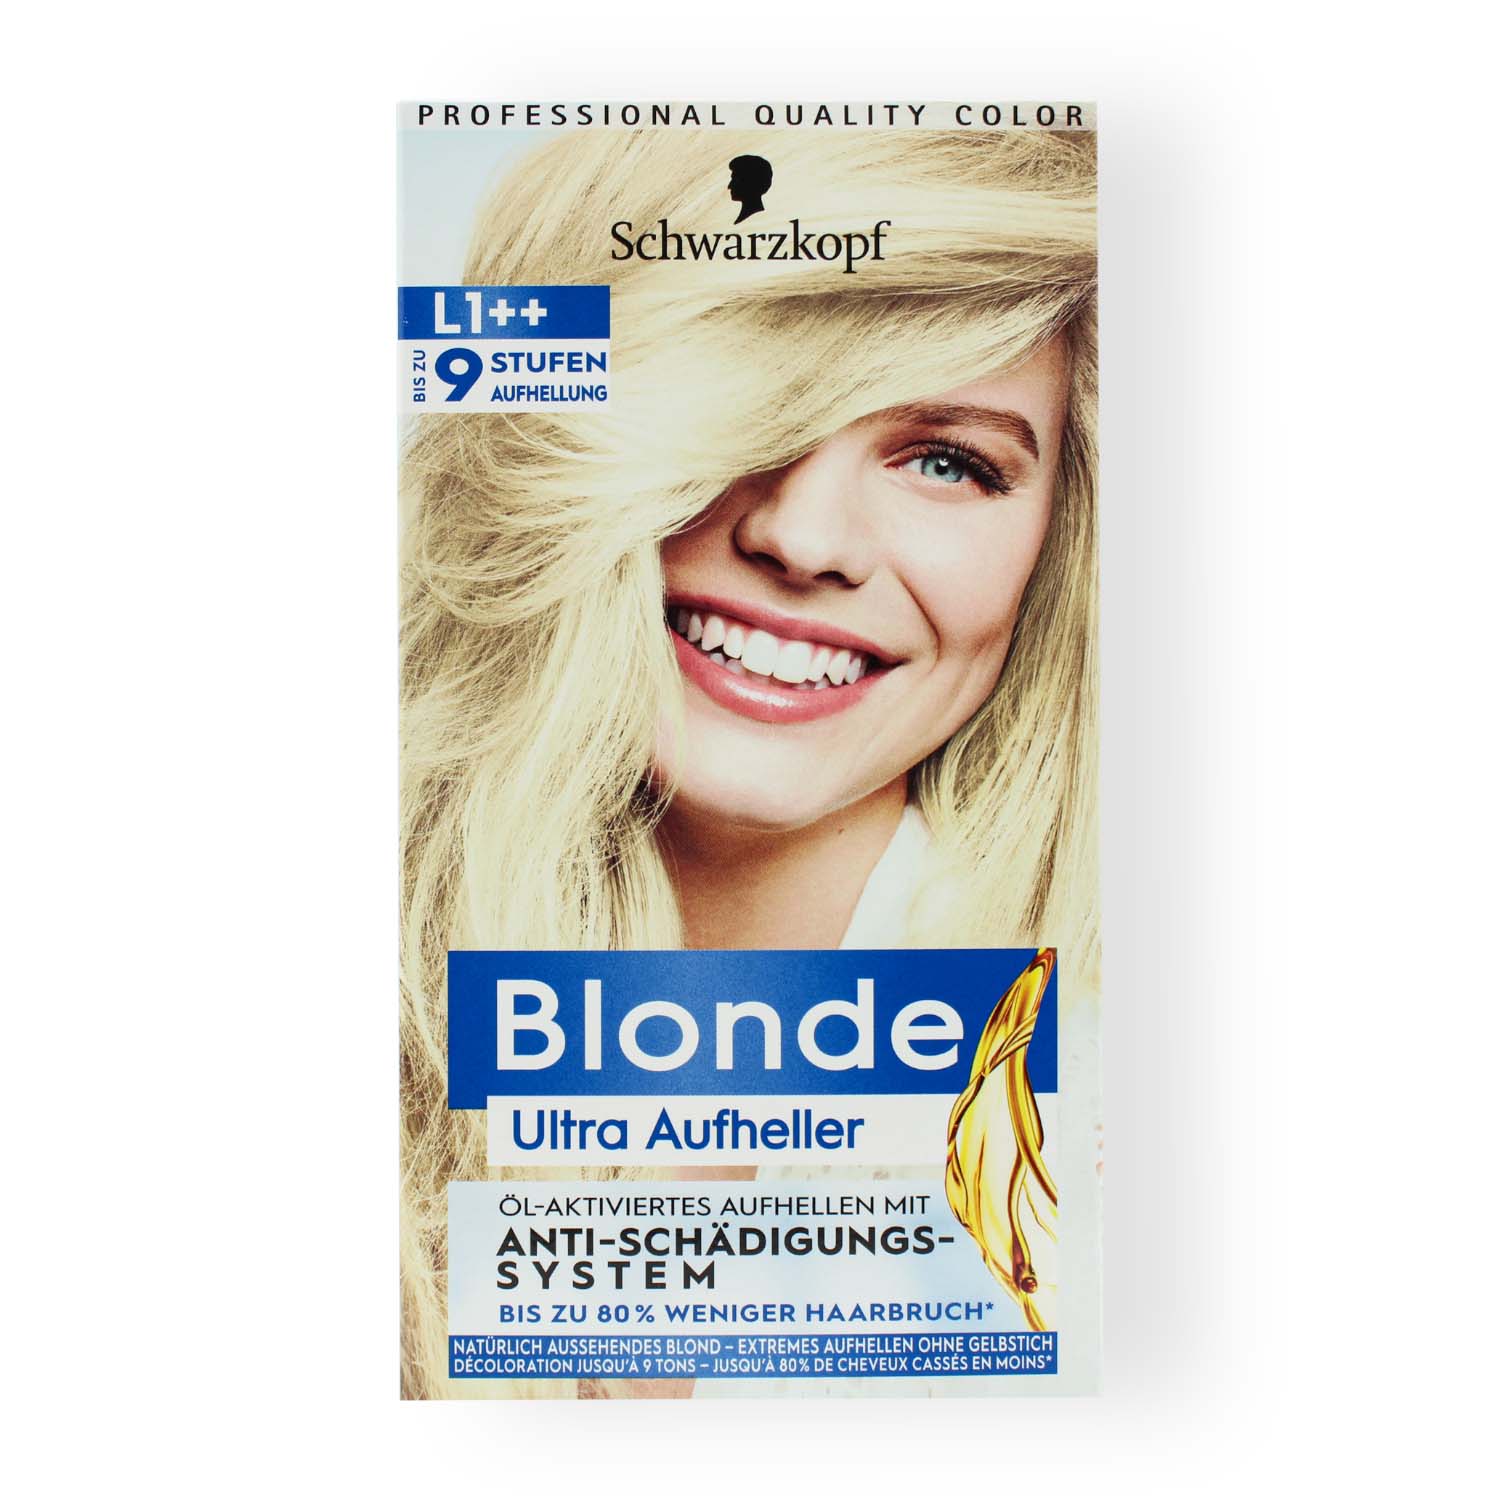 Schwarzkopf Blond Ultra Aufheller (L1++)